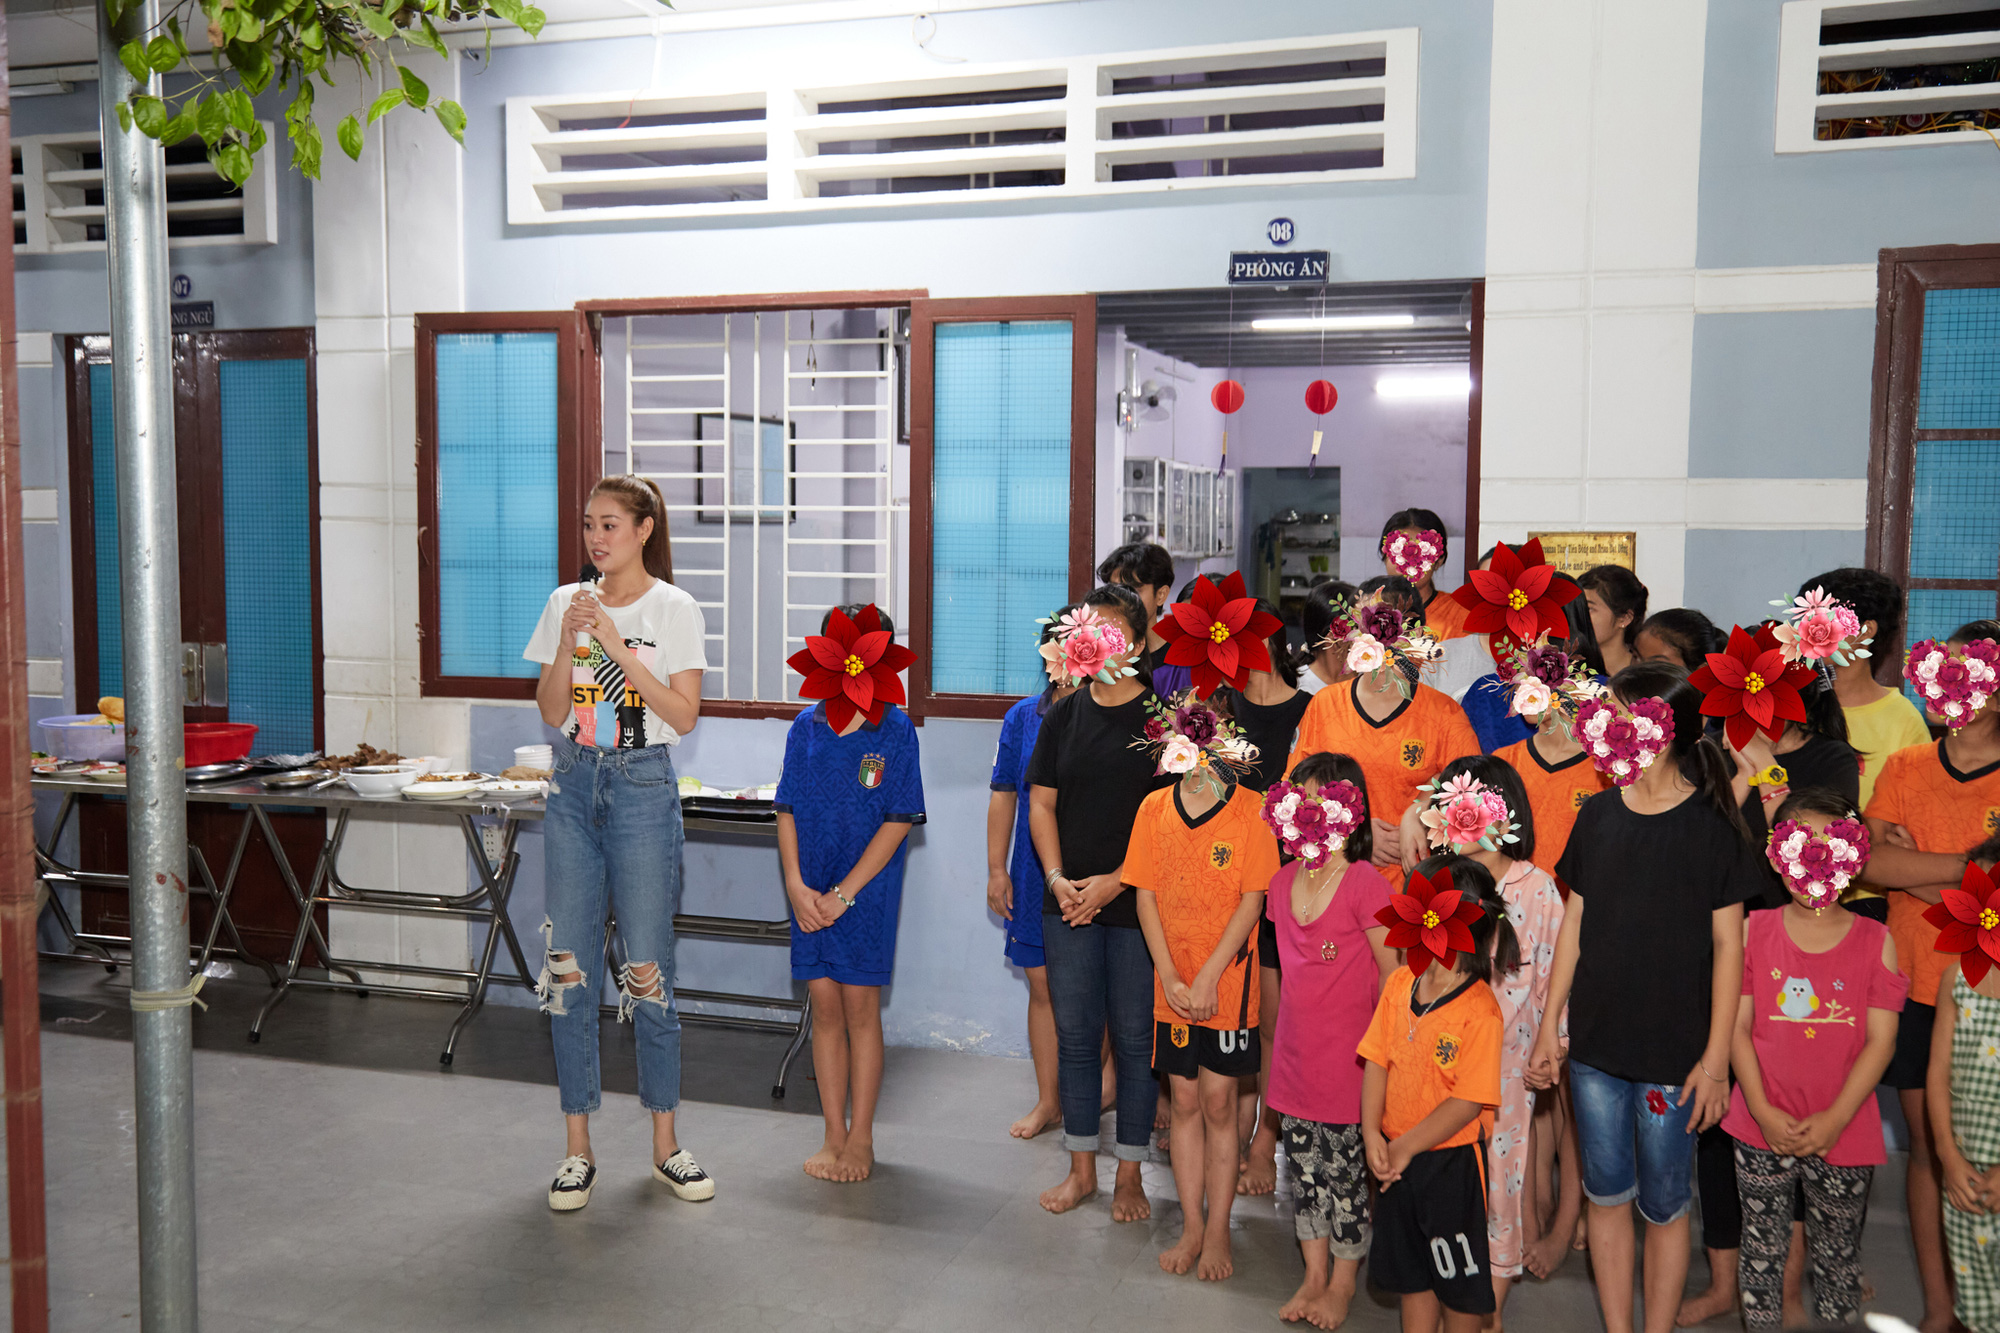 Hoa hậu Khánh Vân bật khóc khi thăm ngôi nhà an toàn cho trẻ em bị xâm hại - Ảnh 3.